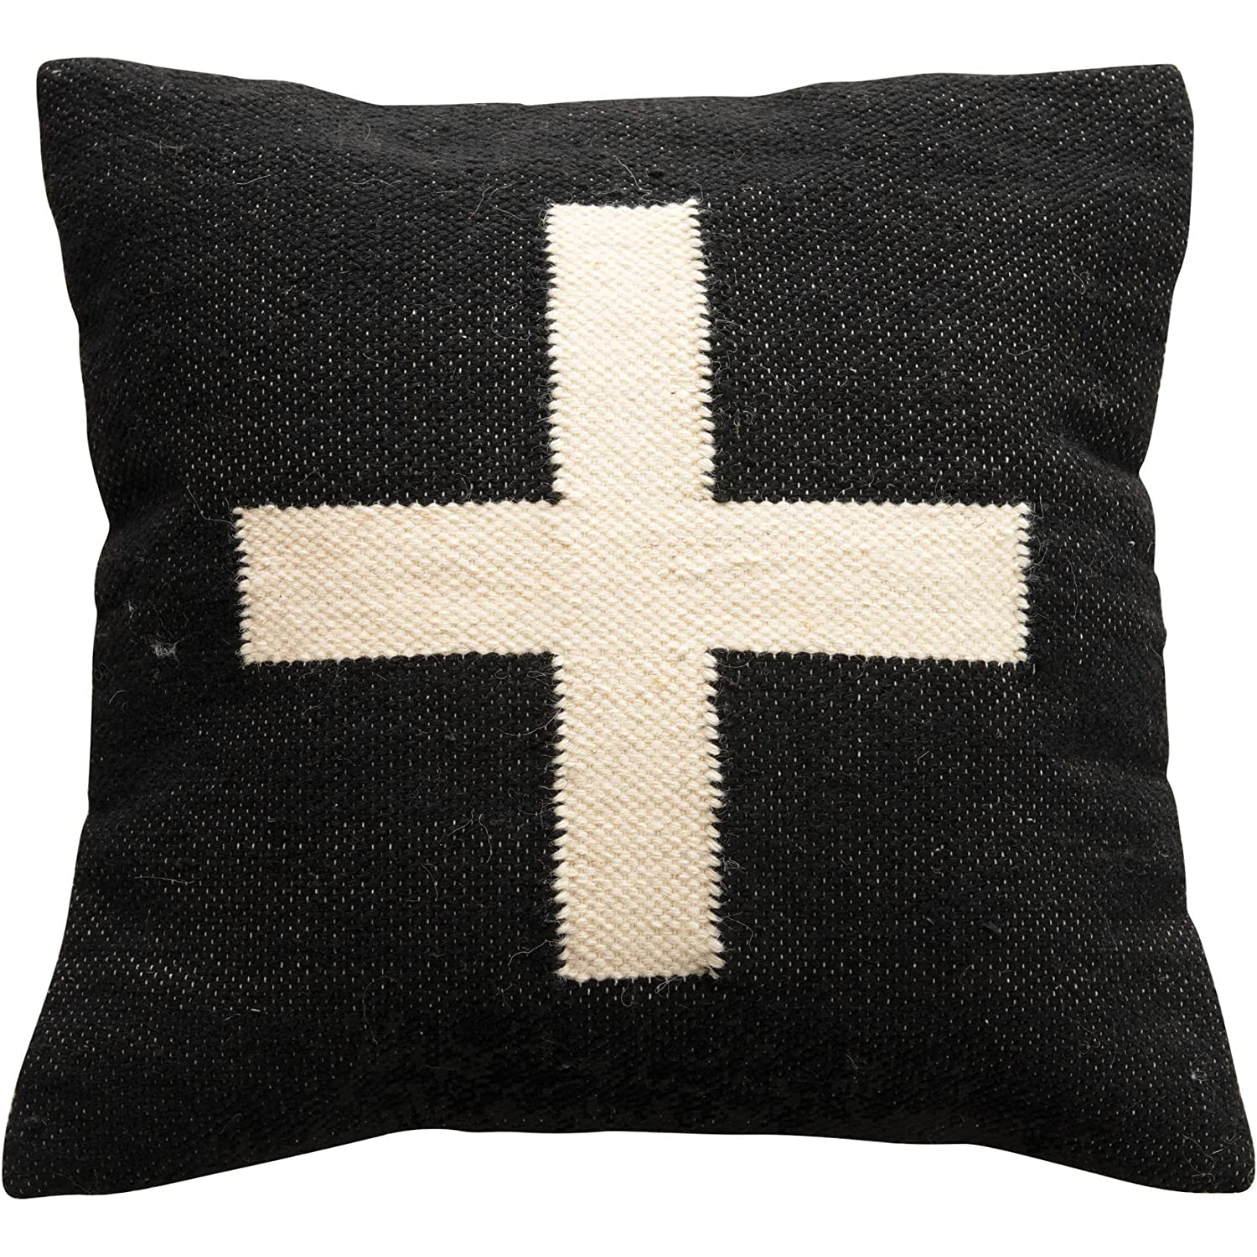 Wool Blend Swiss Cross Pillow, 20 inches, Black & Cream